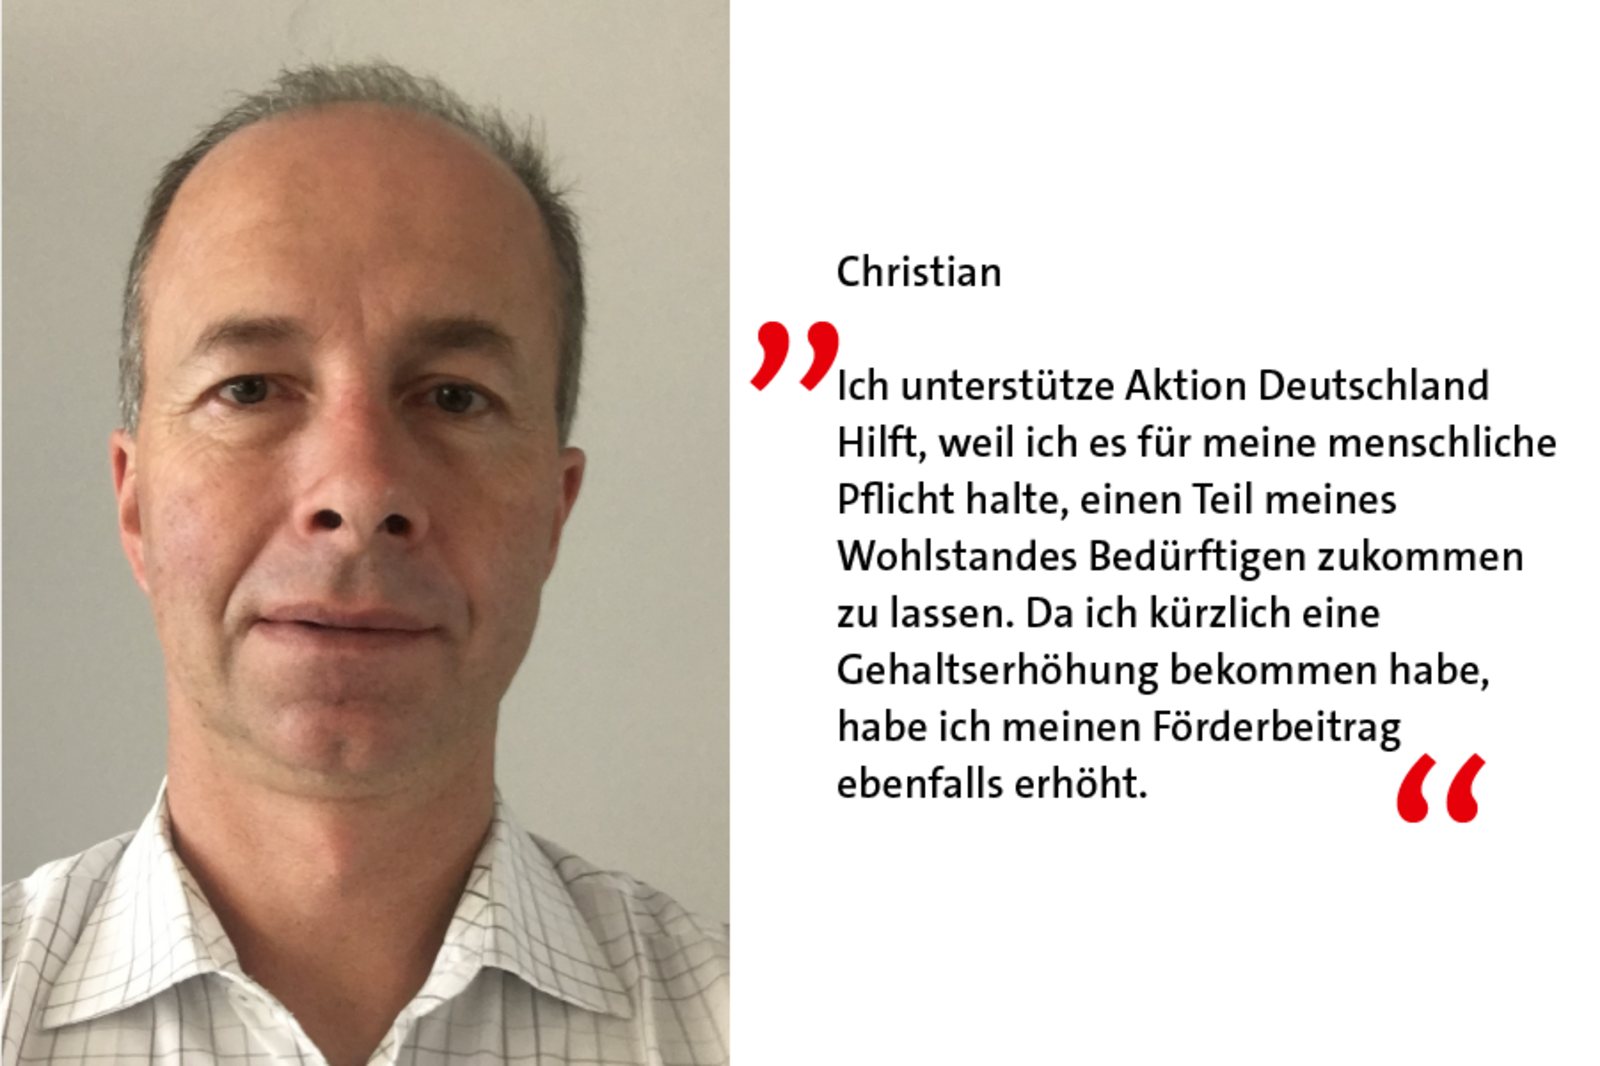 Christian ist Förderer weil: Ich unterstütze Aktion Deutschland Hilft, weil ich es für meine menschliche Pflicht halte, einen Teil meines Wohlstandes Bedürftigen zukommen zu lassen. 